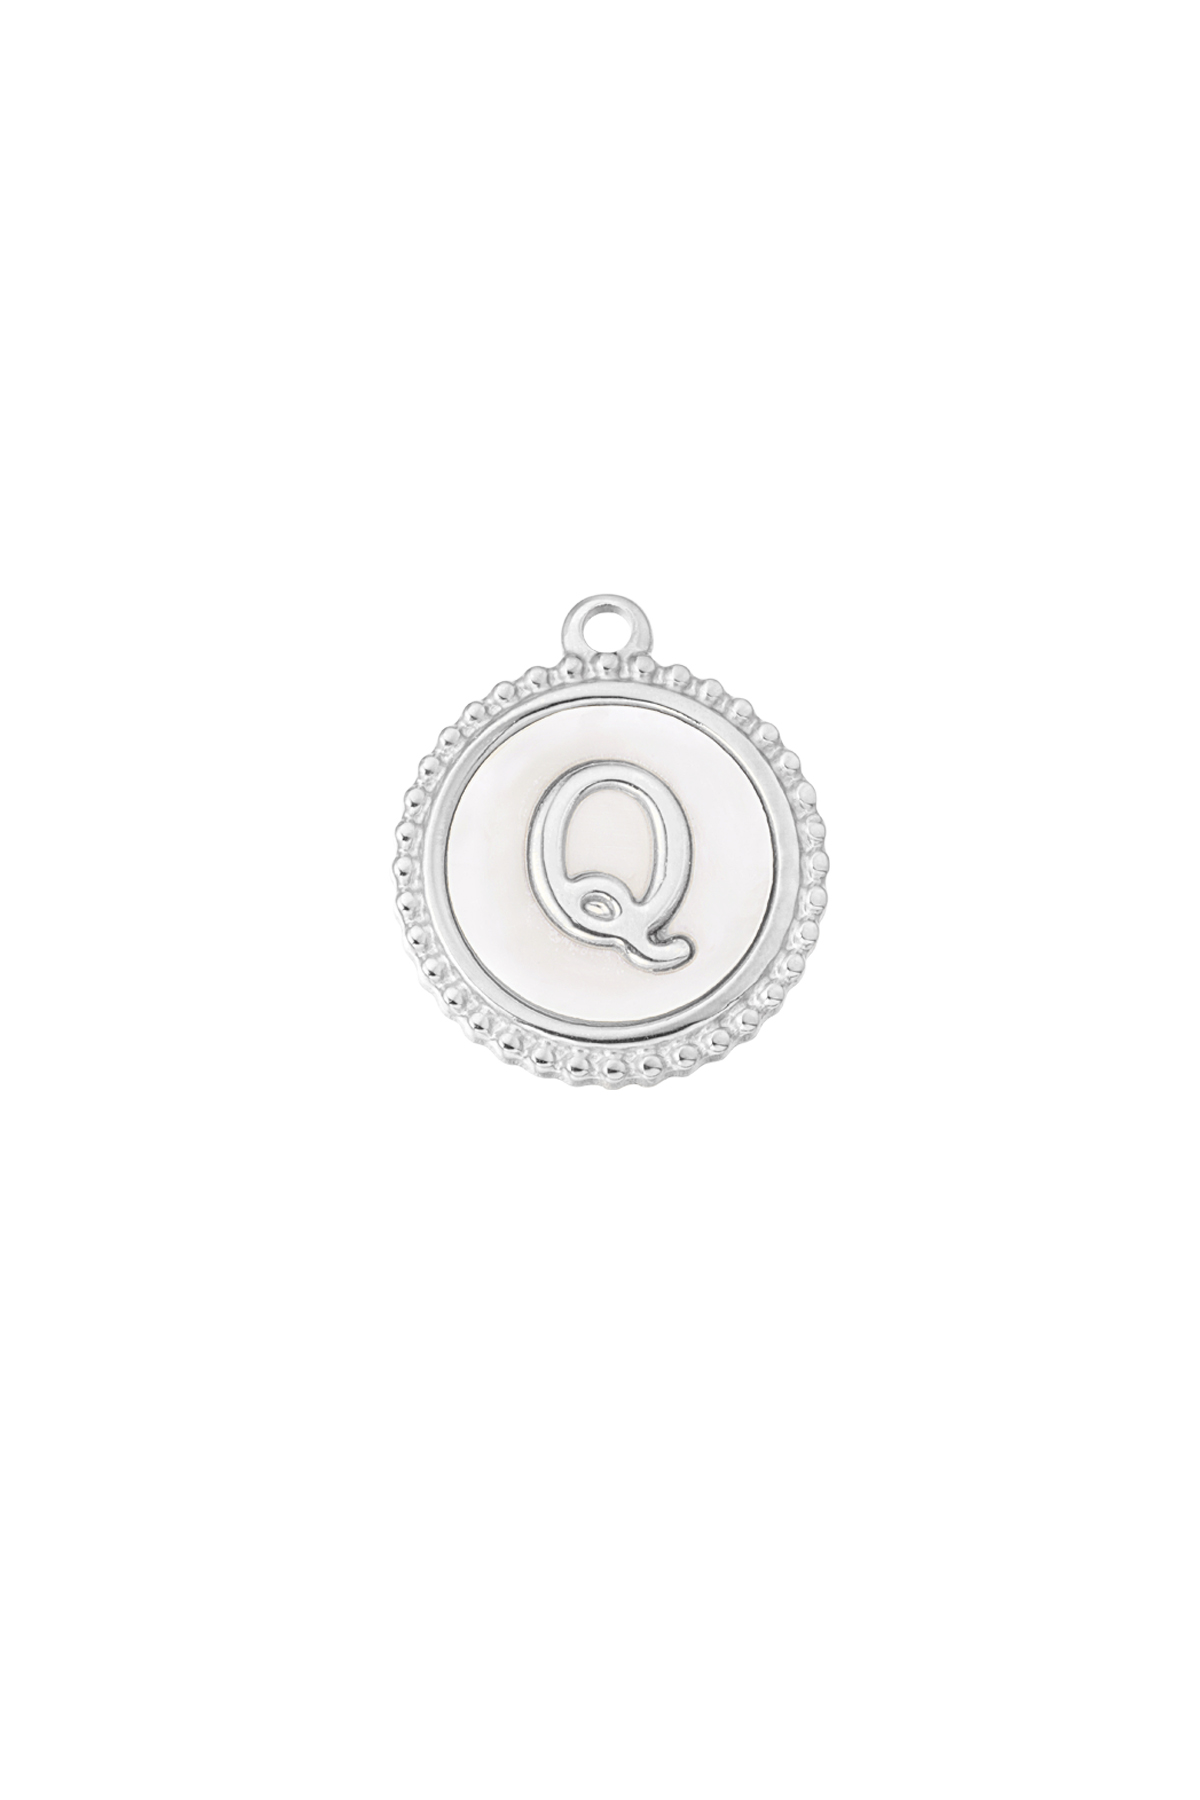 Charm elegante Q - plata/blanco